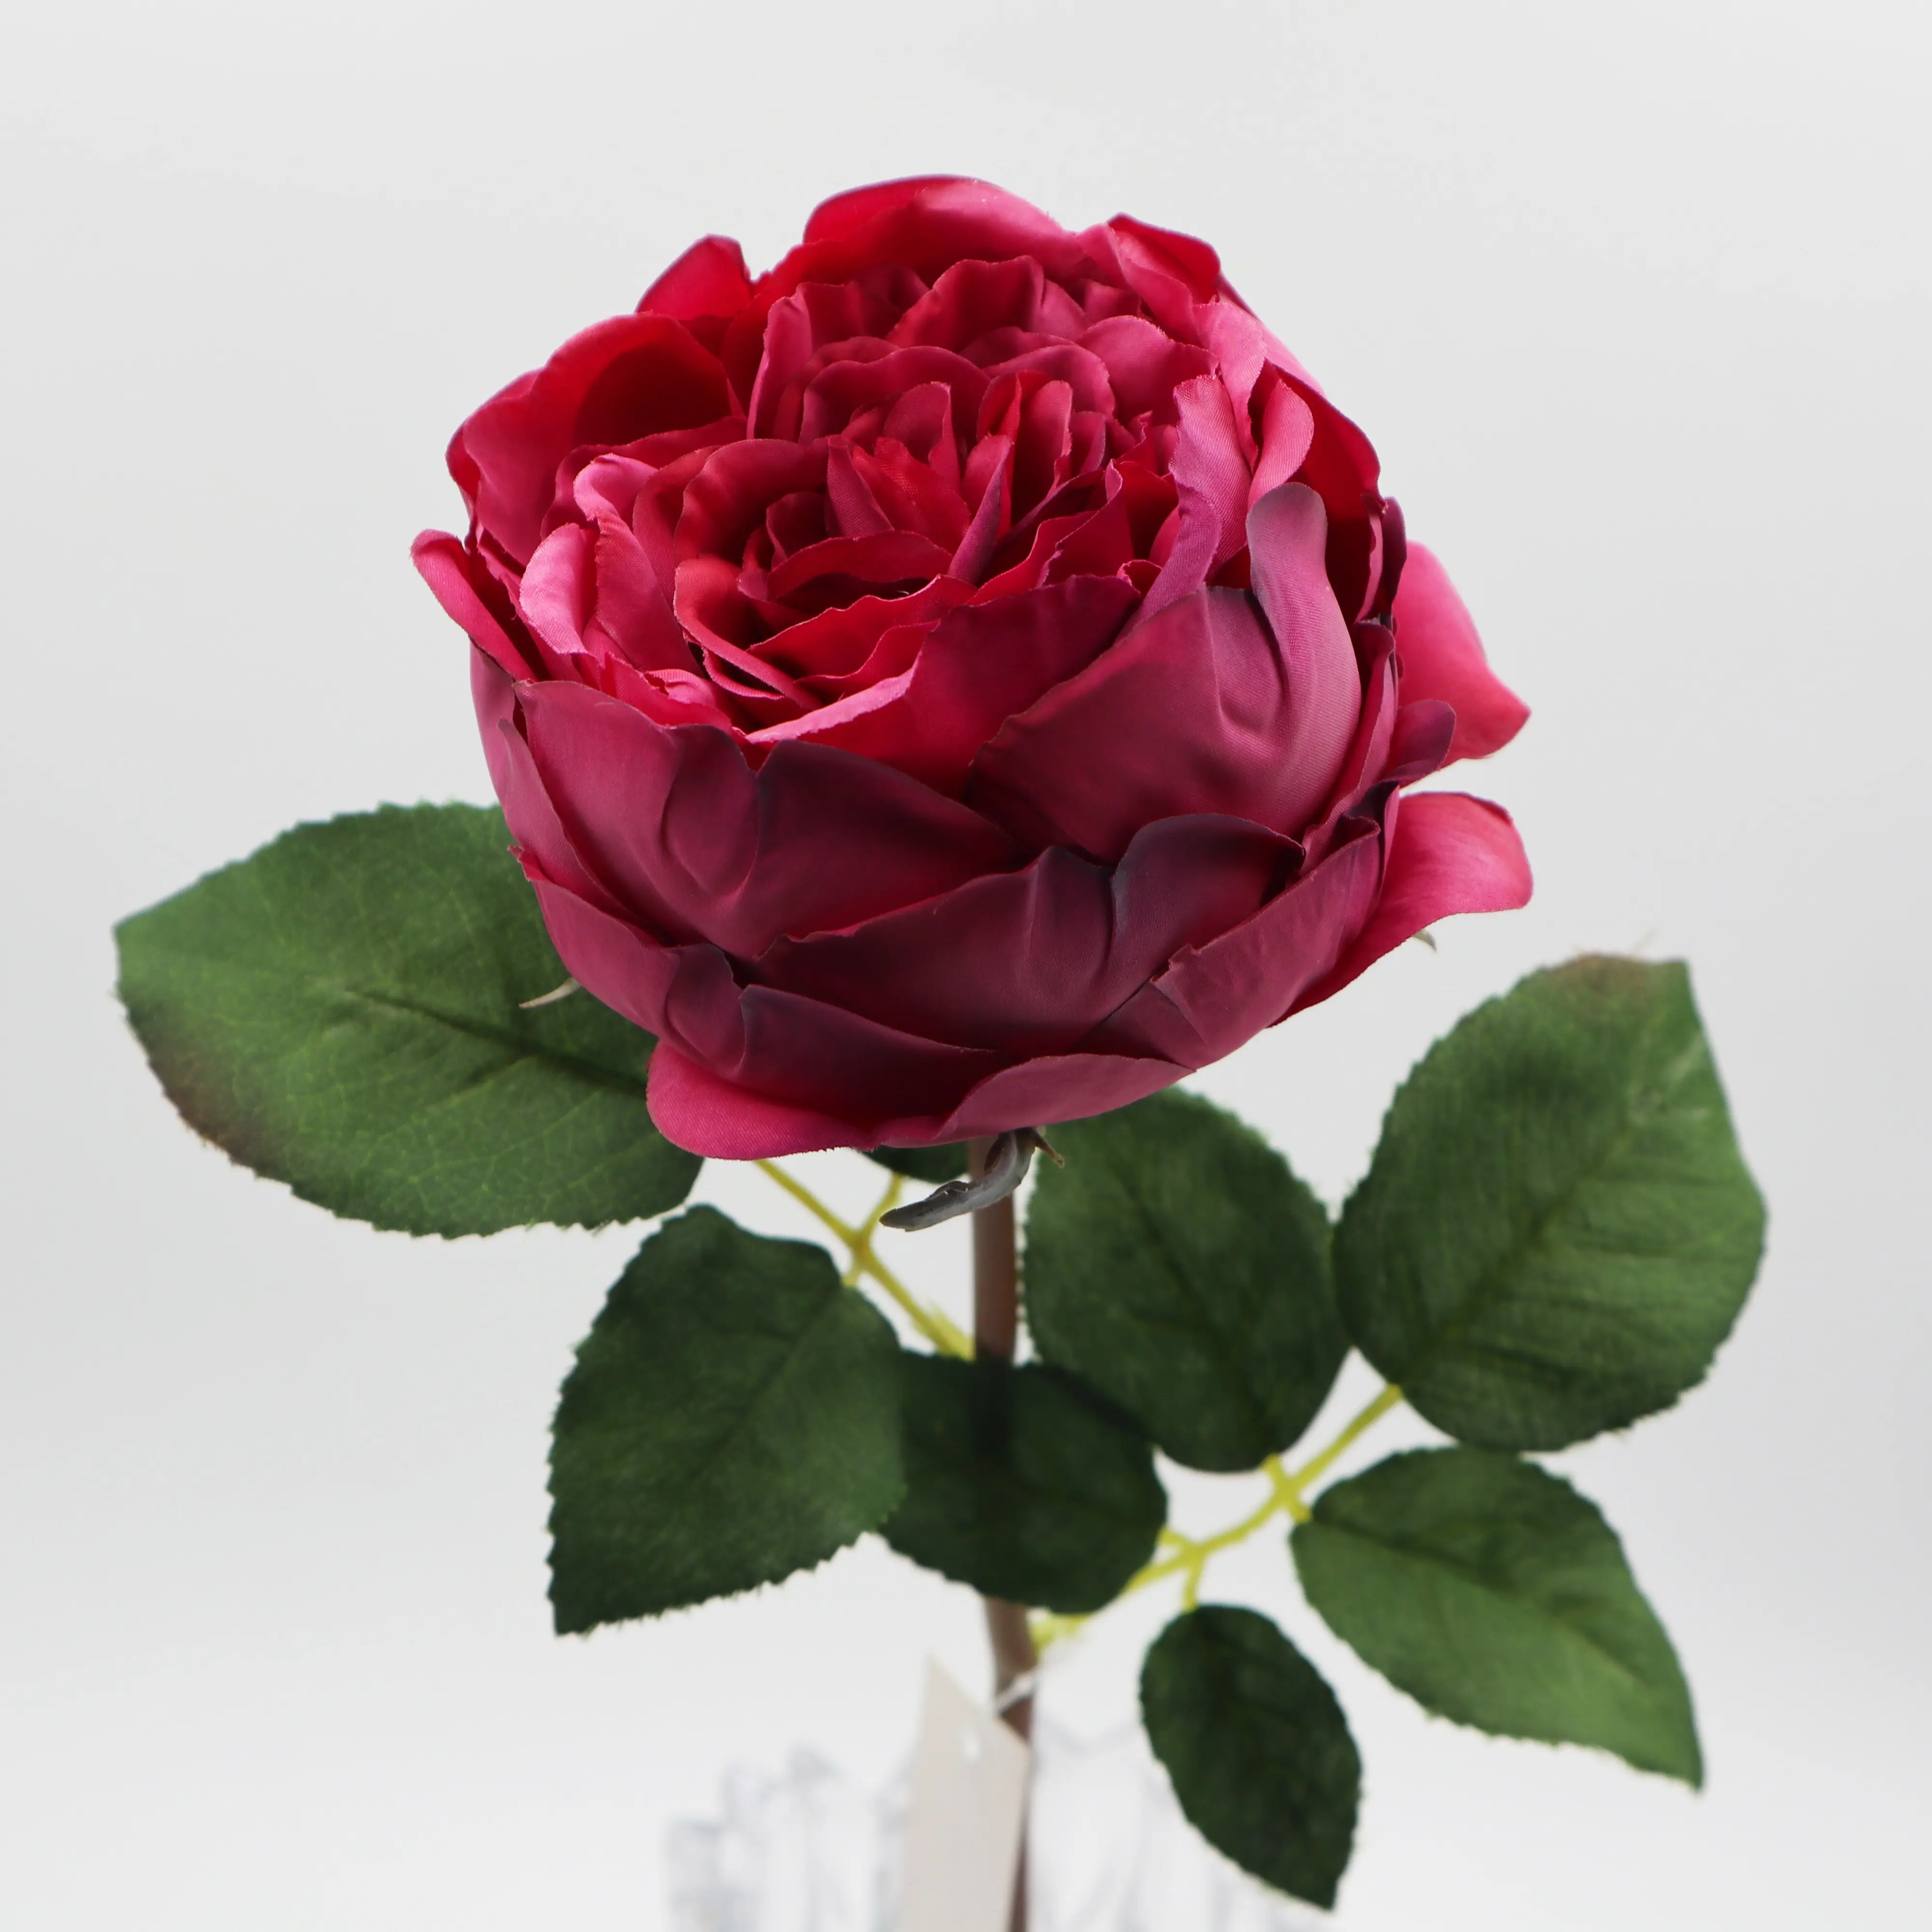 Commercio all'ingrosso di alta qualità di seta artificiale David Austin rosa cavolo rosa fiore vero tocco finto decorazione di nozze nuovo arrivo